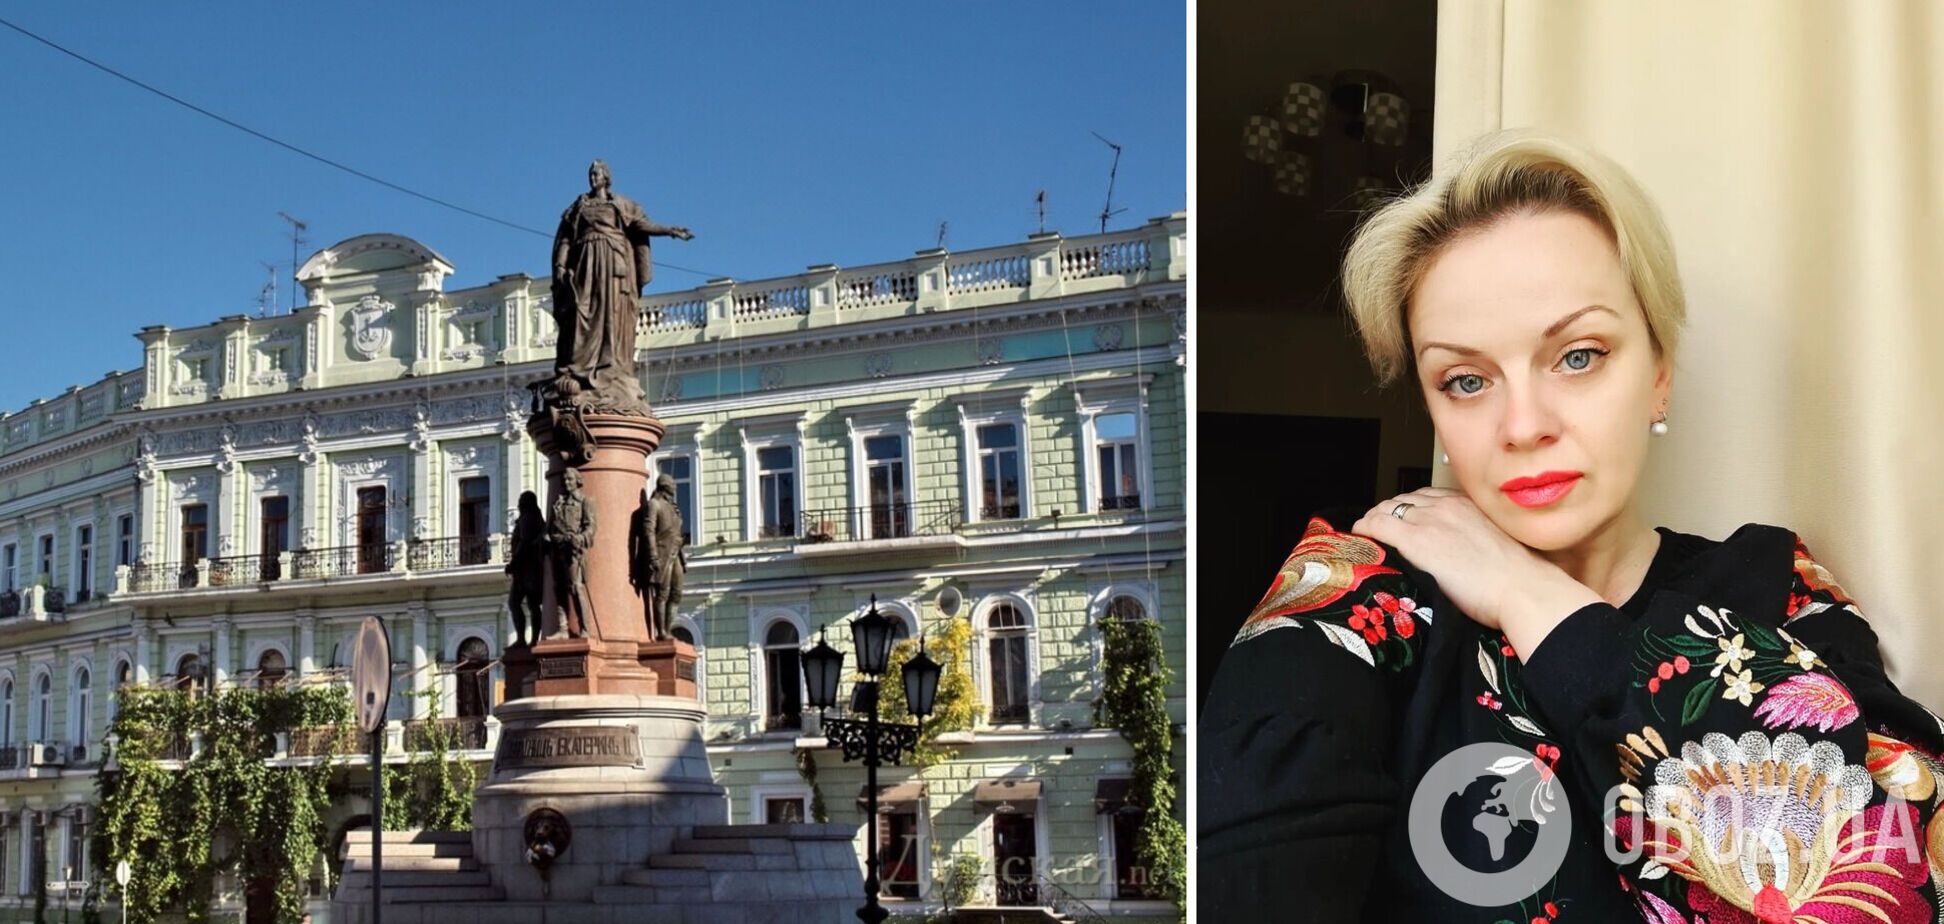 Вітовська закликала знести пам'ятник Катерині ІІ в Одесі: в мережі розгорілася дискусія